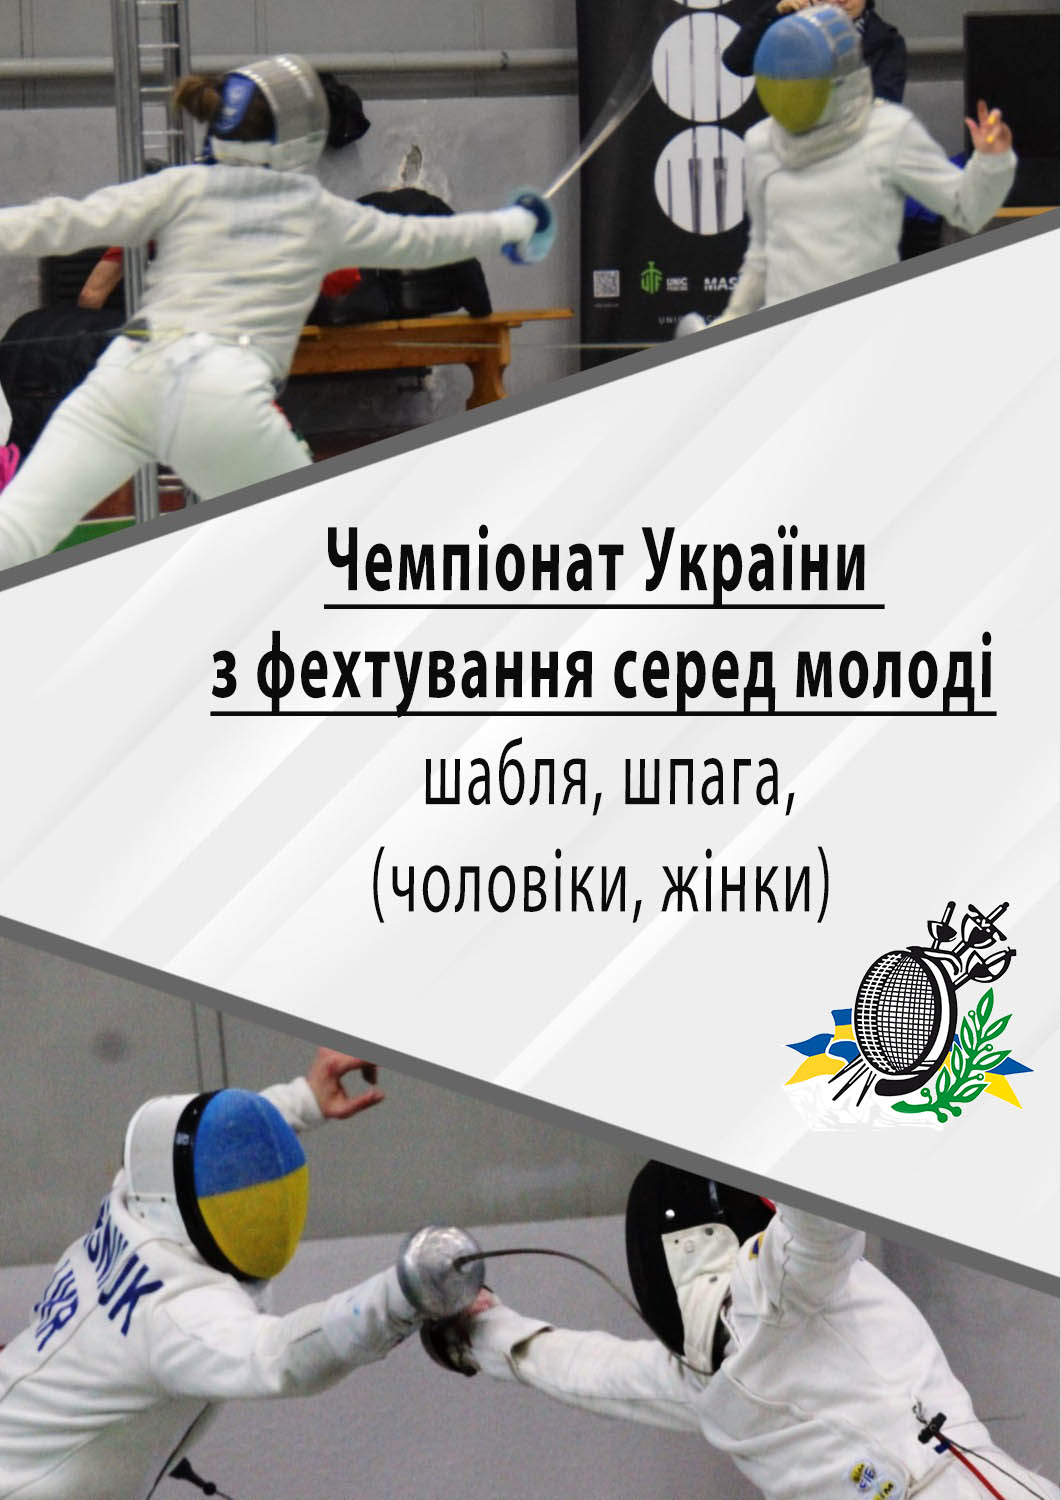 Київ приймає молодіжний чемпіонат України